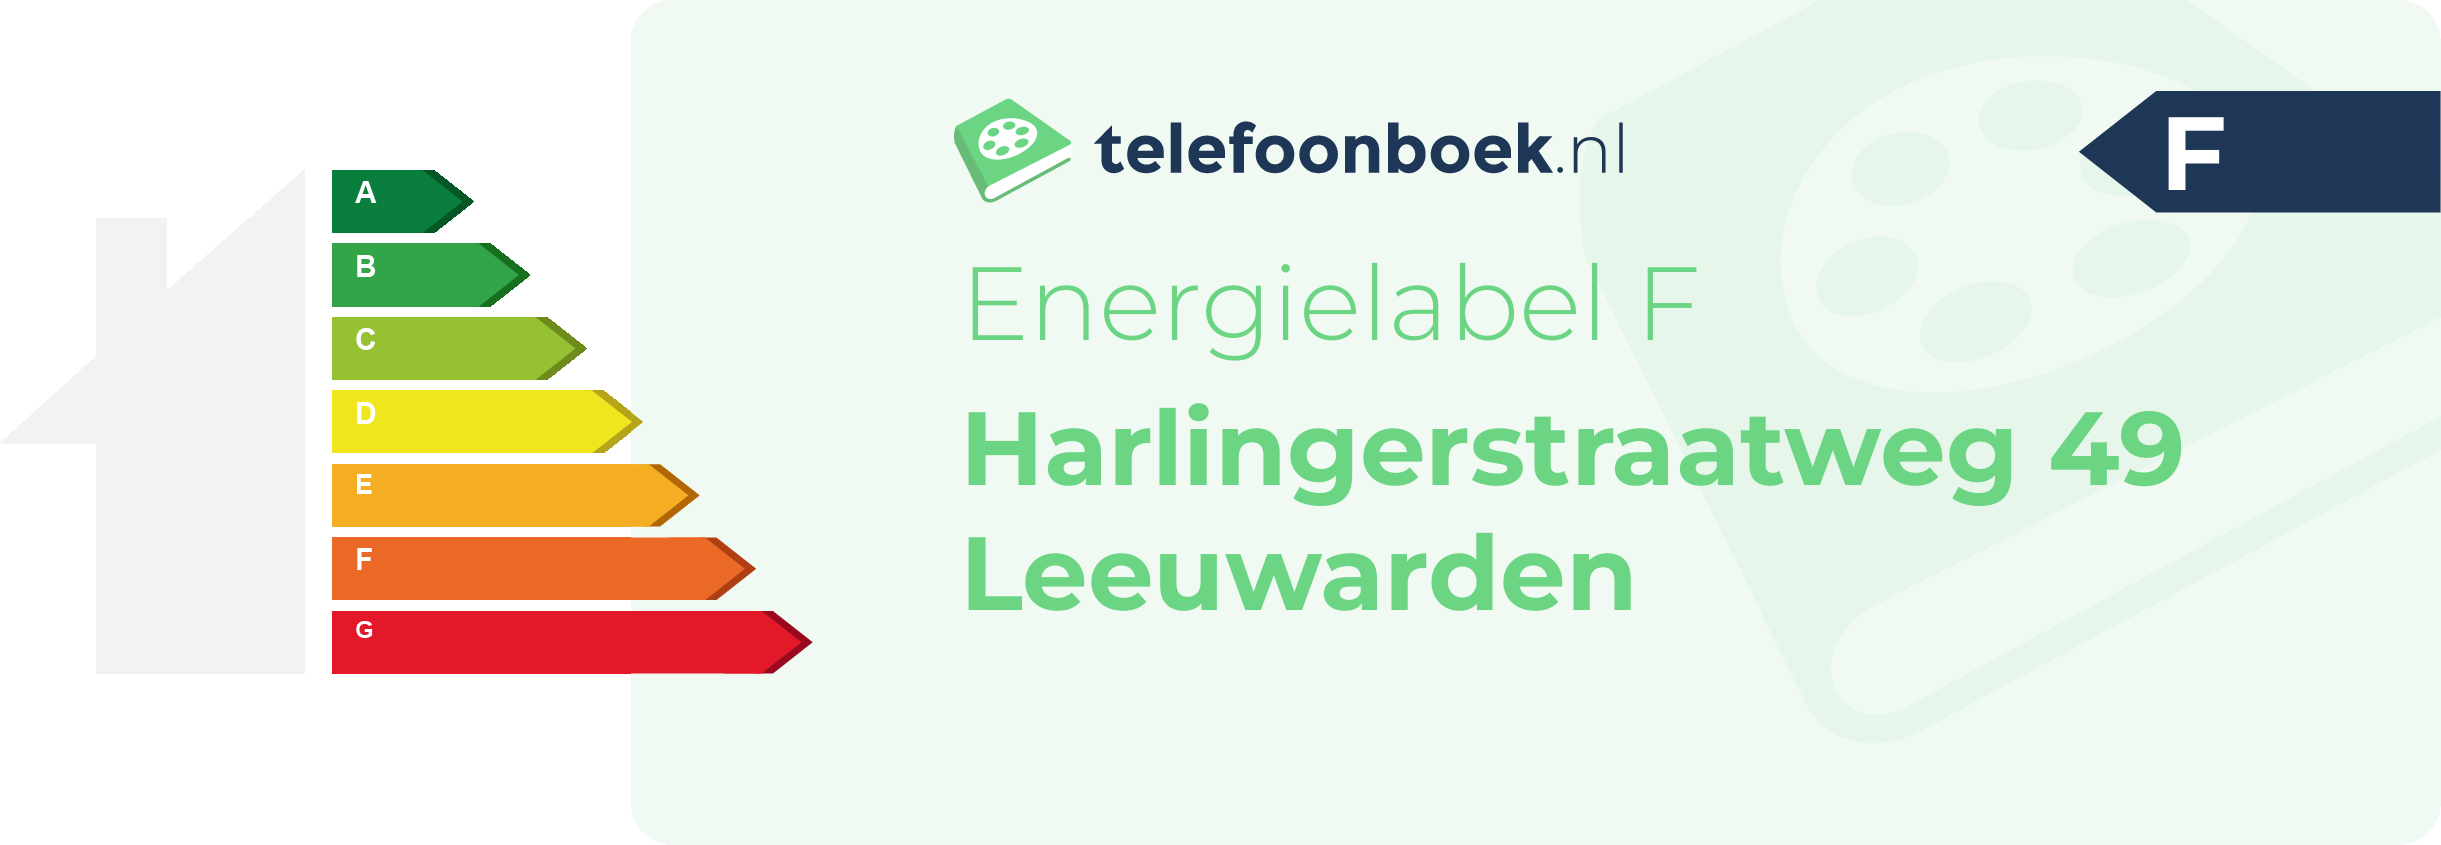 Energielabel Harlingerstraatweg 49 Leeuwarden